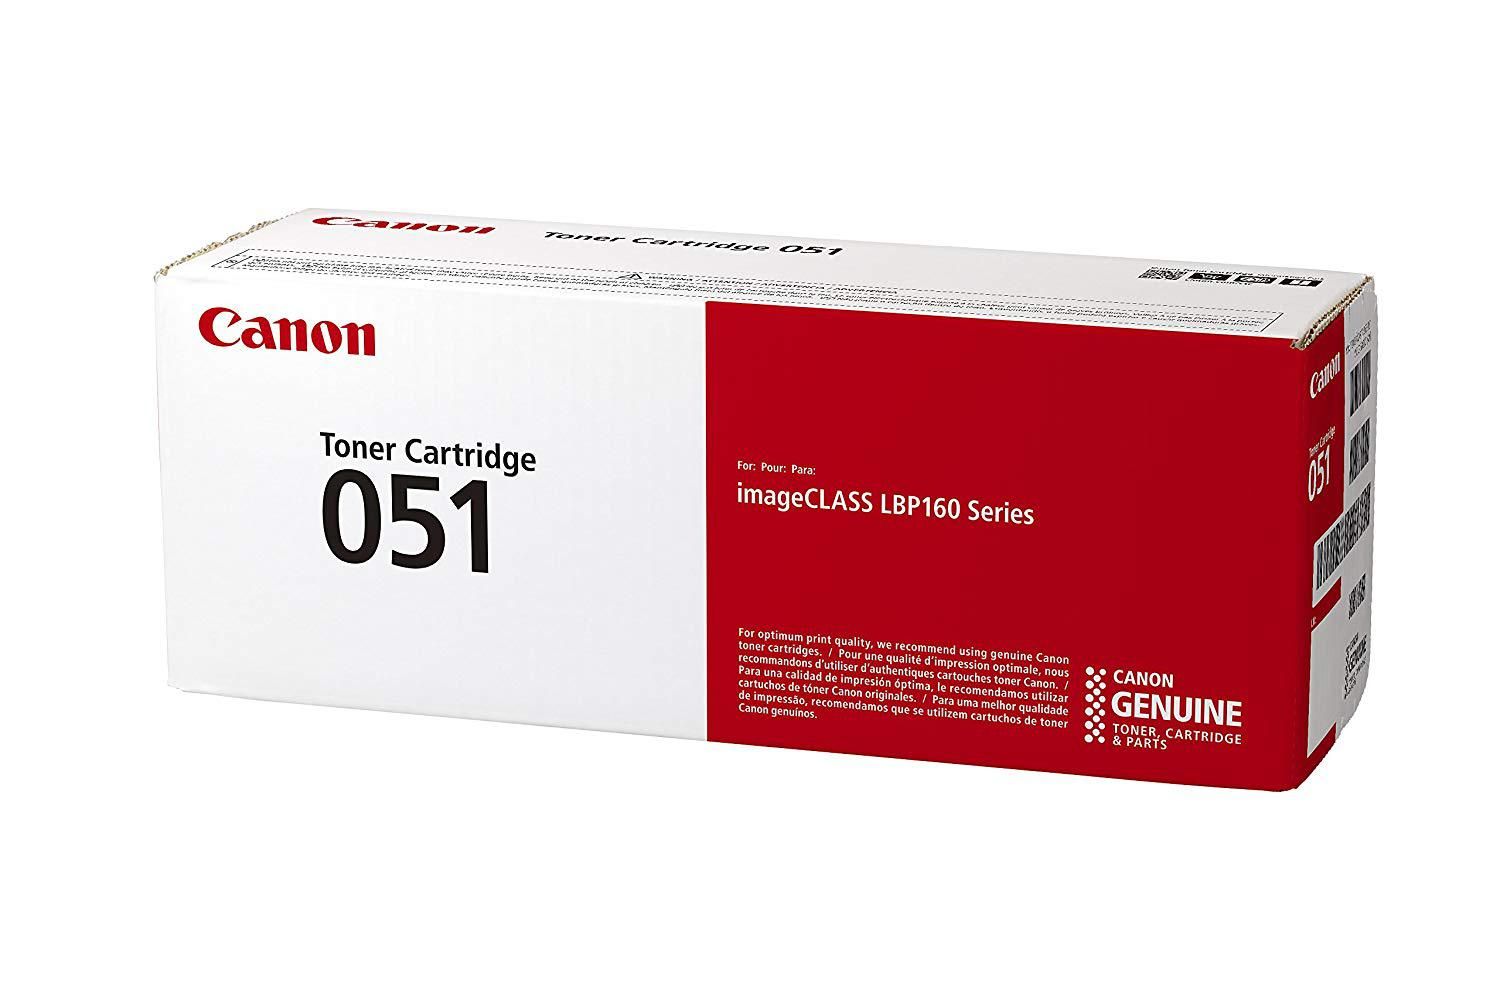 Toner CAMELLEON Black, CF279A-CP, compatibil cu HP M12|M26, 1.6K, incl.TV 0.8 RON, 